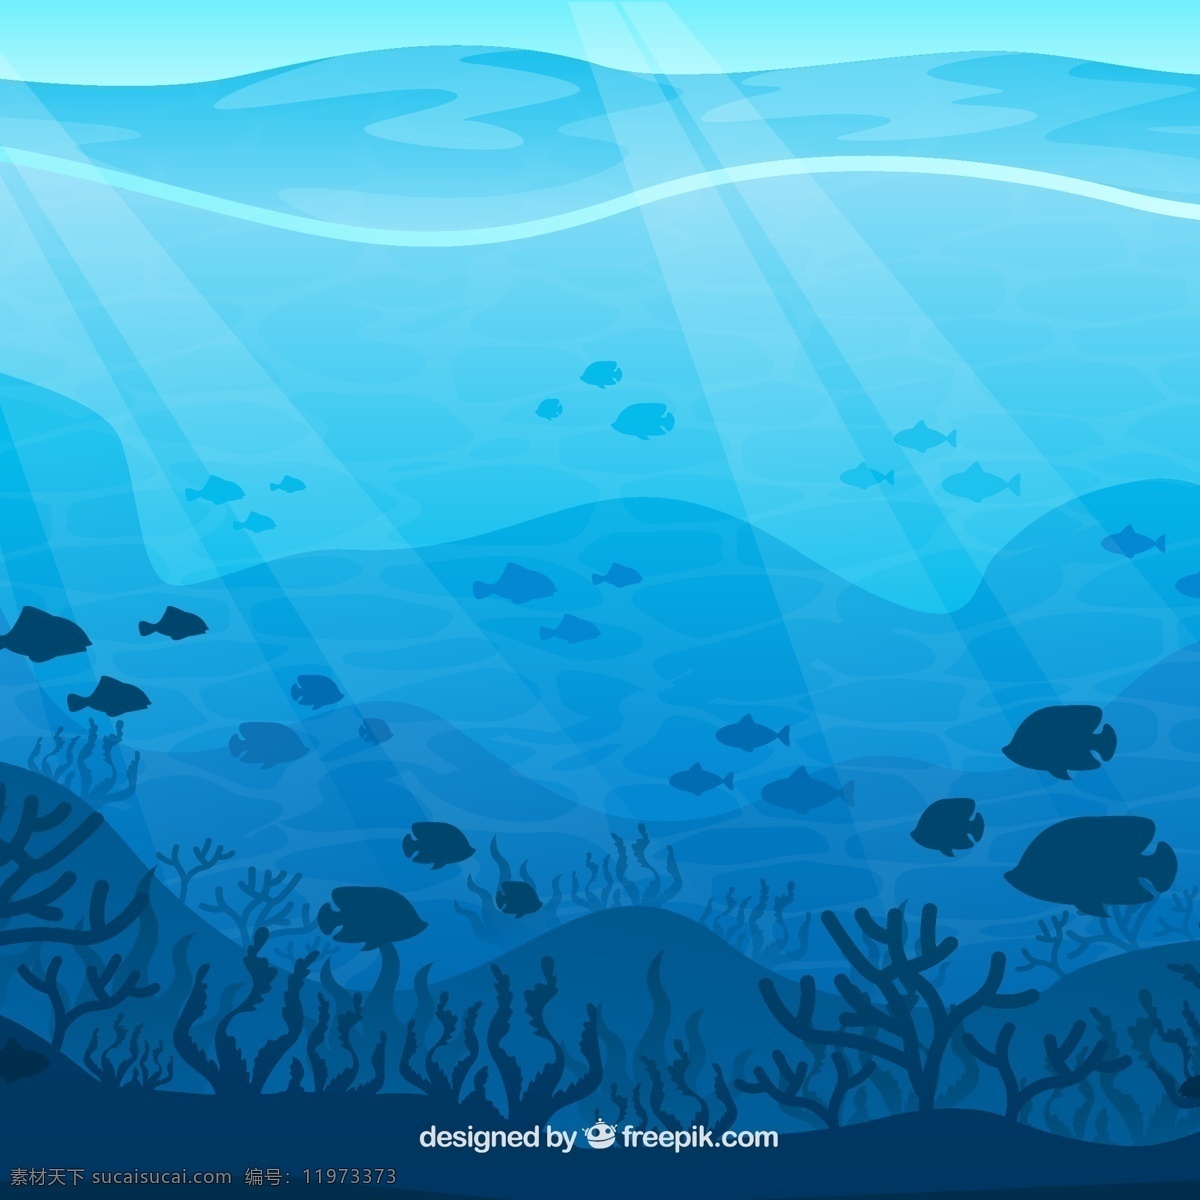 卡通 海底 世界 矢量图 海底世界 卡通海底 卡通大海 大海 深海 卡通矢量 鱼 卡通鱼 海底植物 共享素材 自然景观